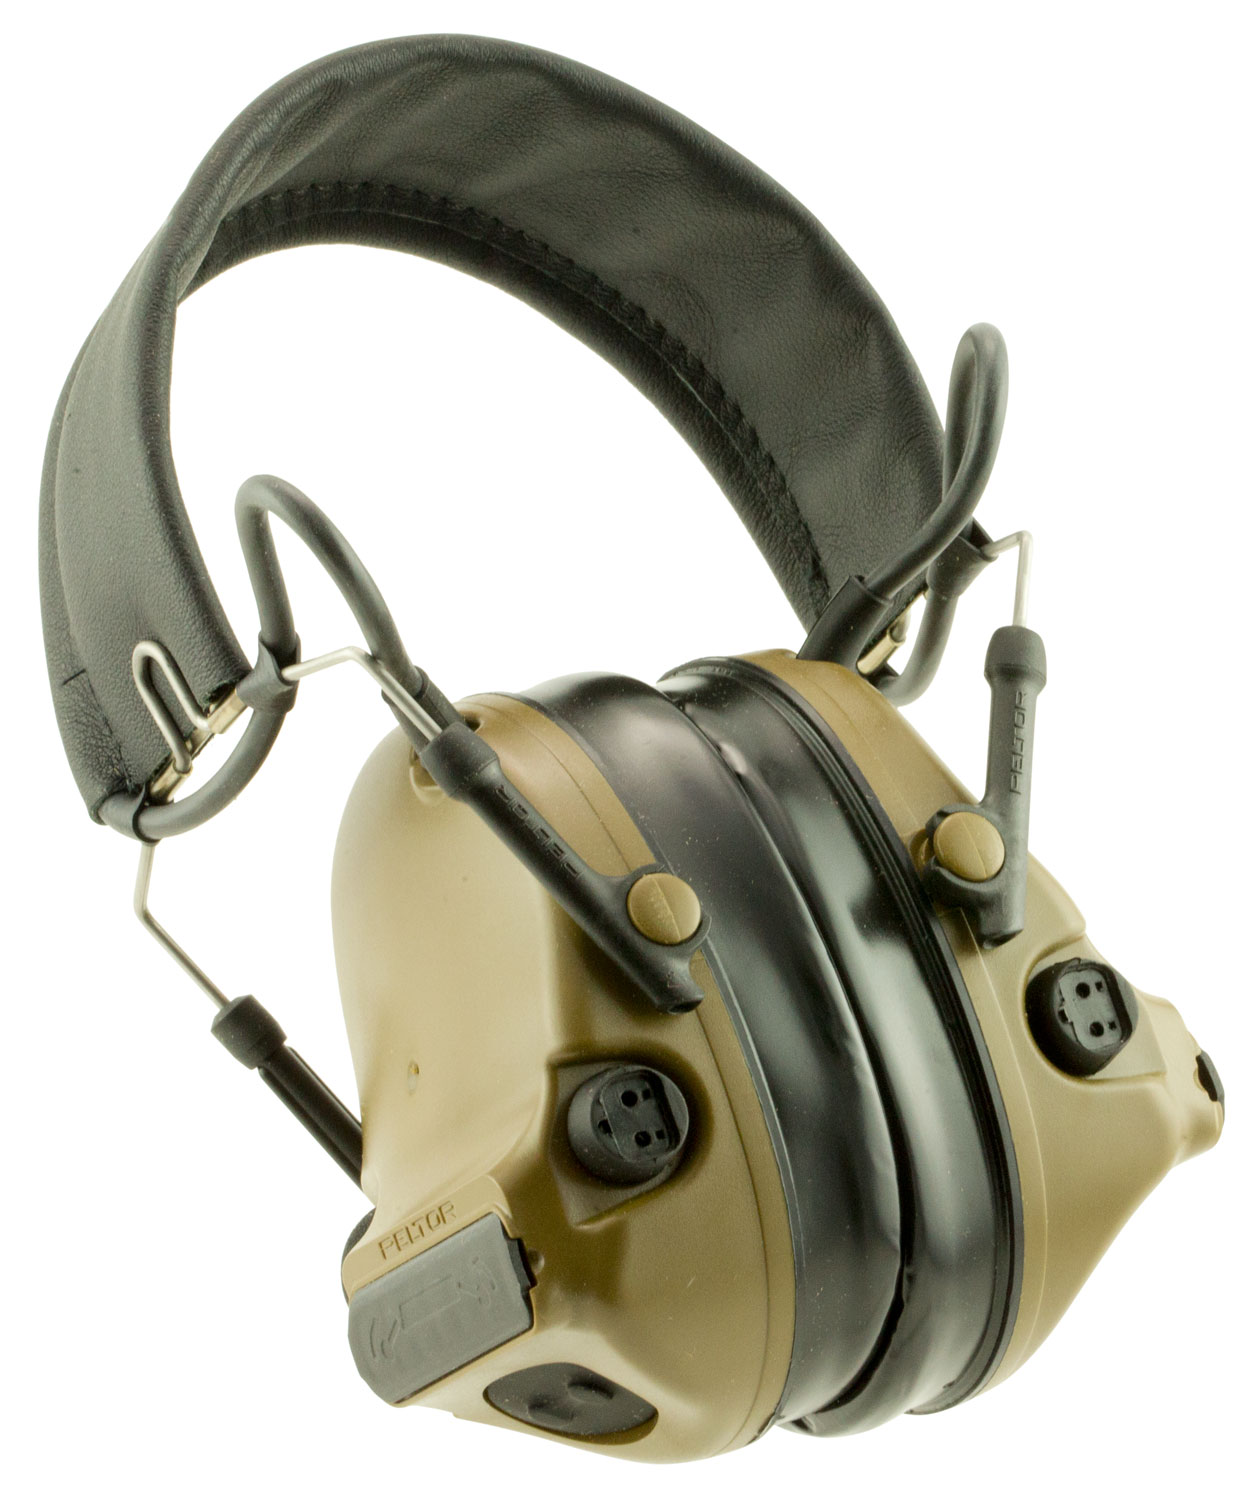 peltor comtac III headset